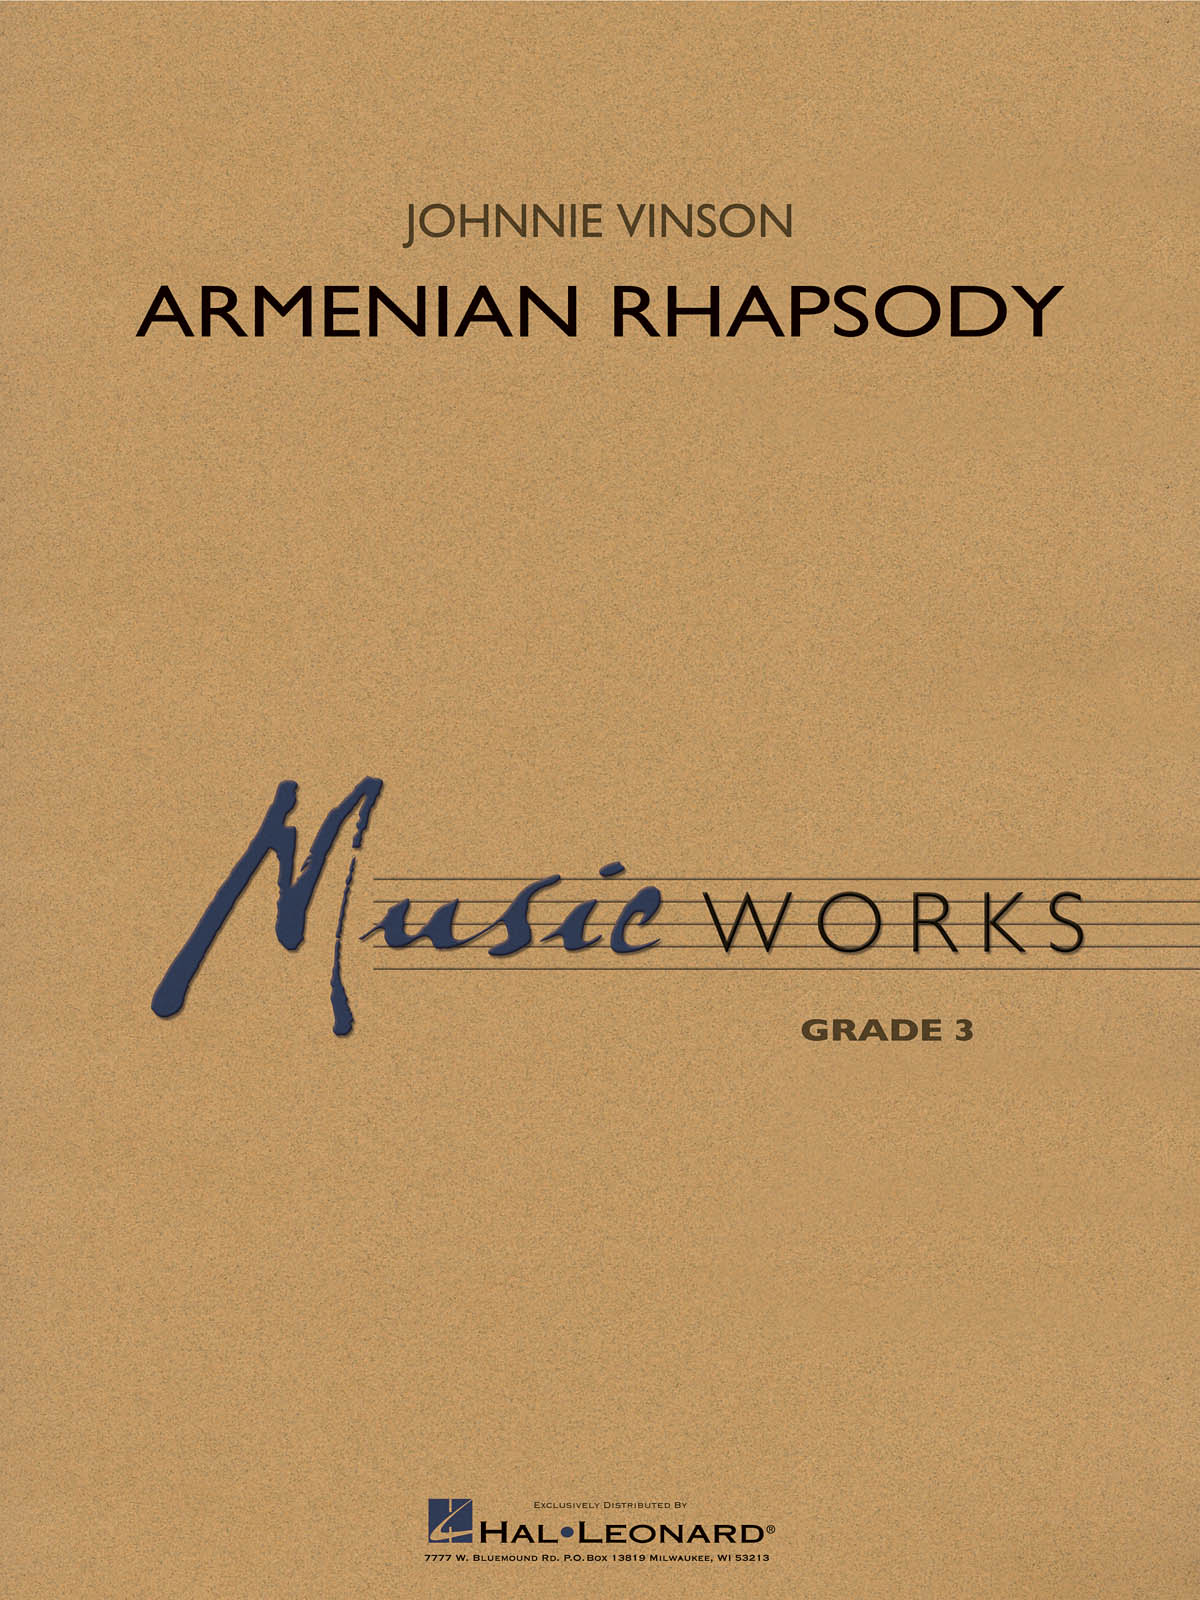 Johnnie Vinson: Armenian Rhapsody: Concert Band: Score & Parts